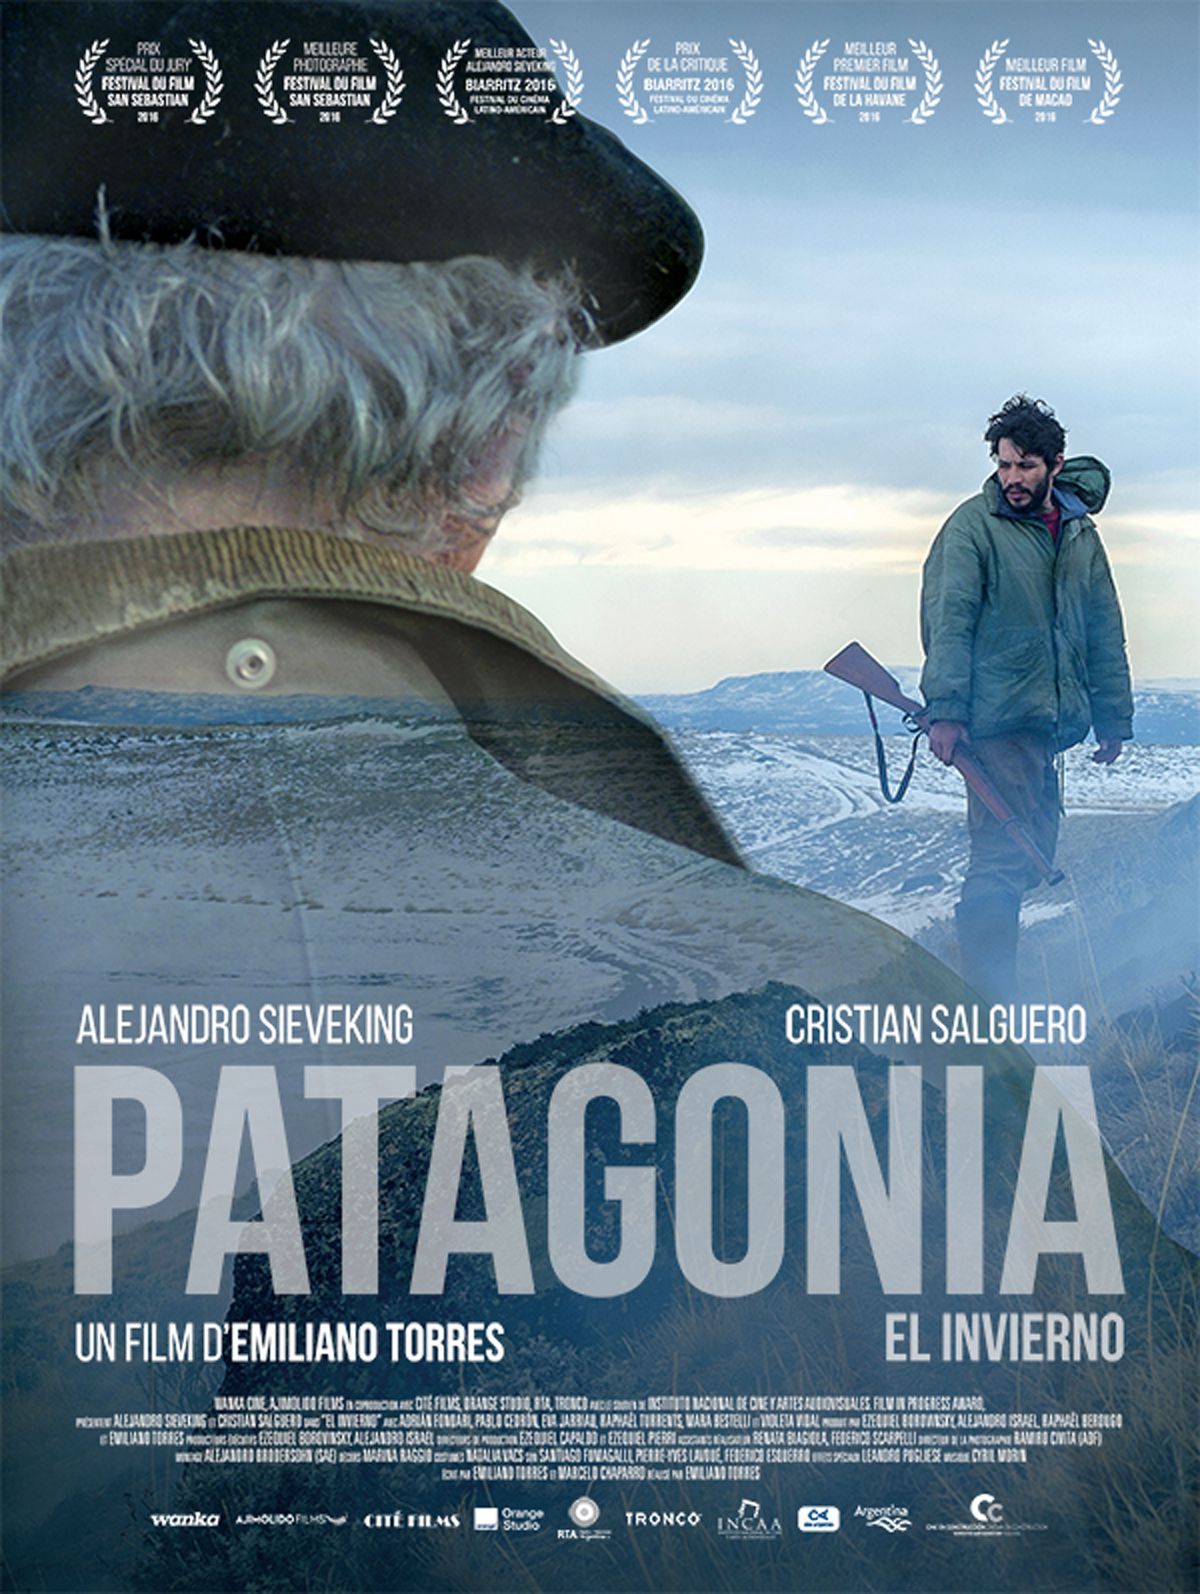 Patagonia, el invierno - Film (2017) streaming VF gratuit complet